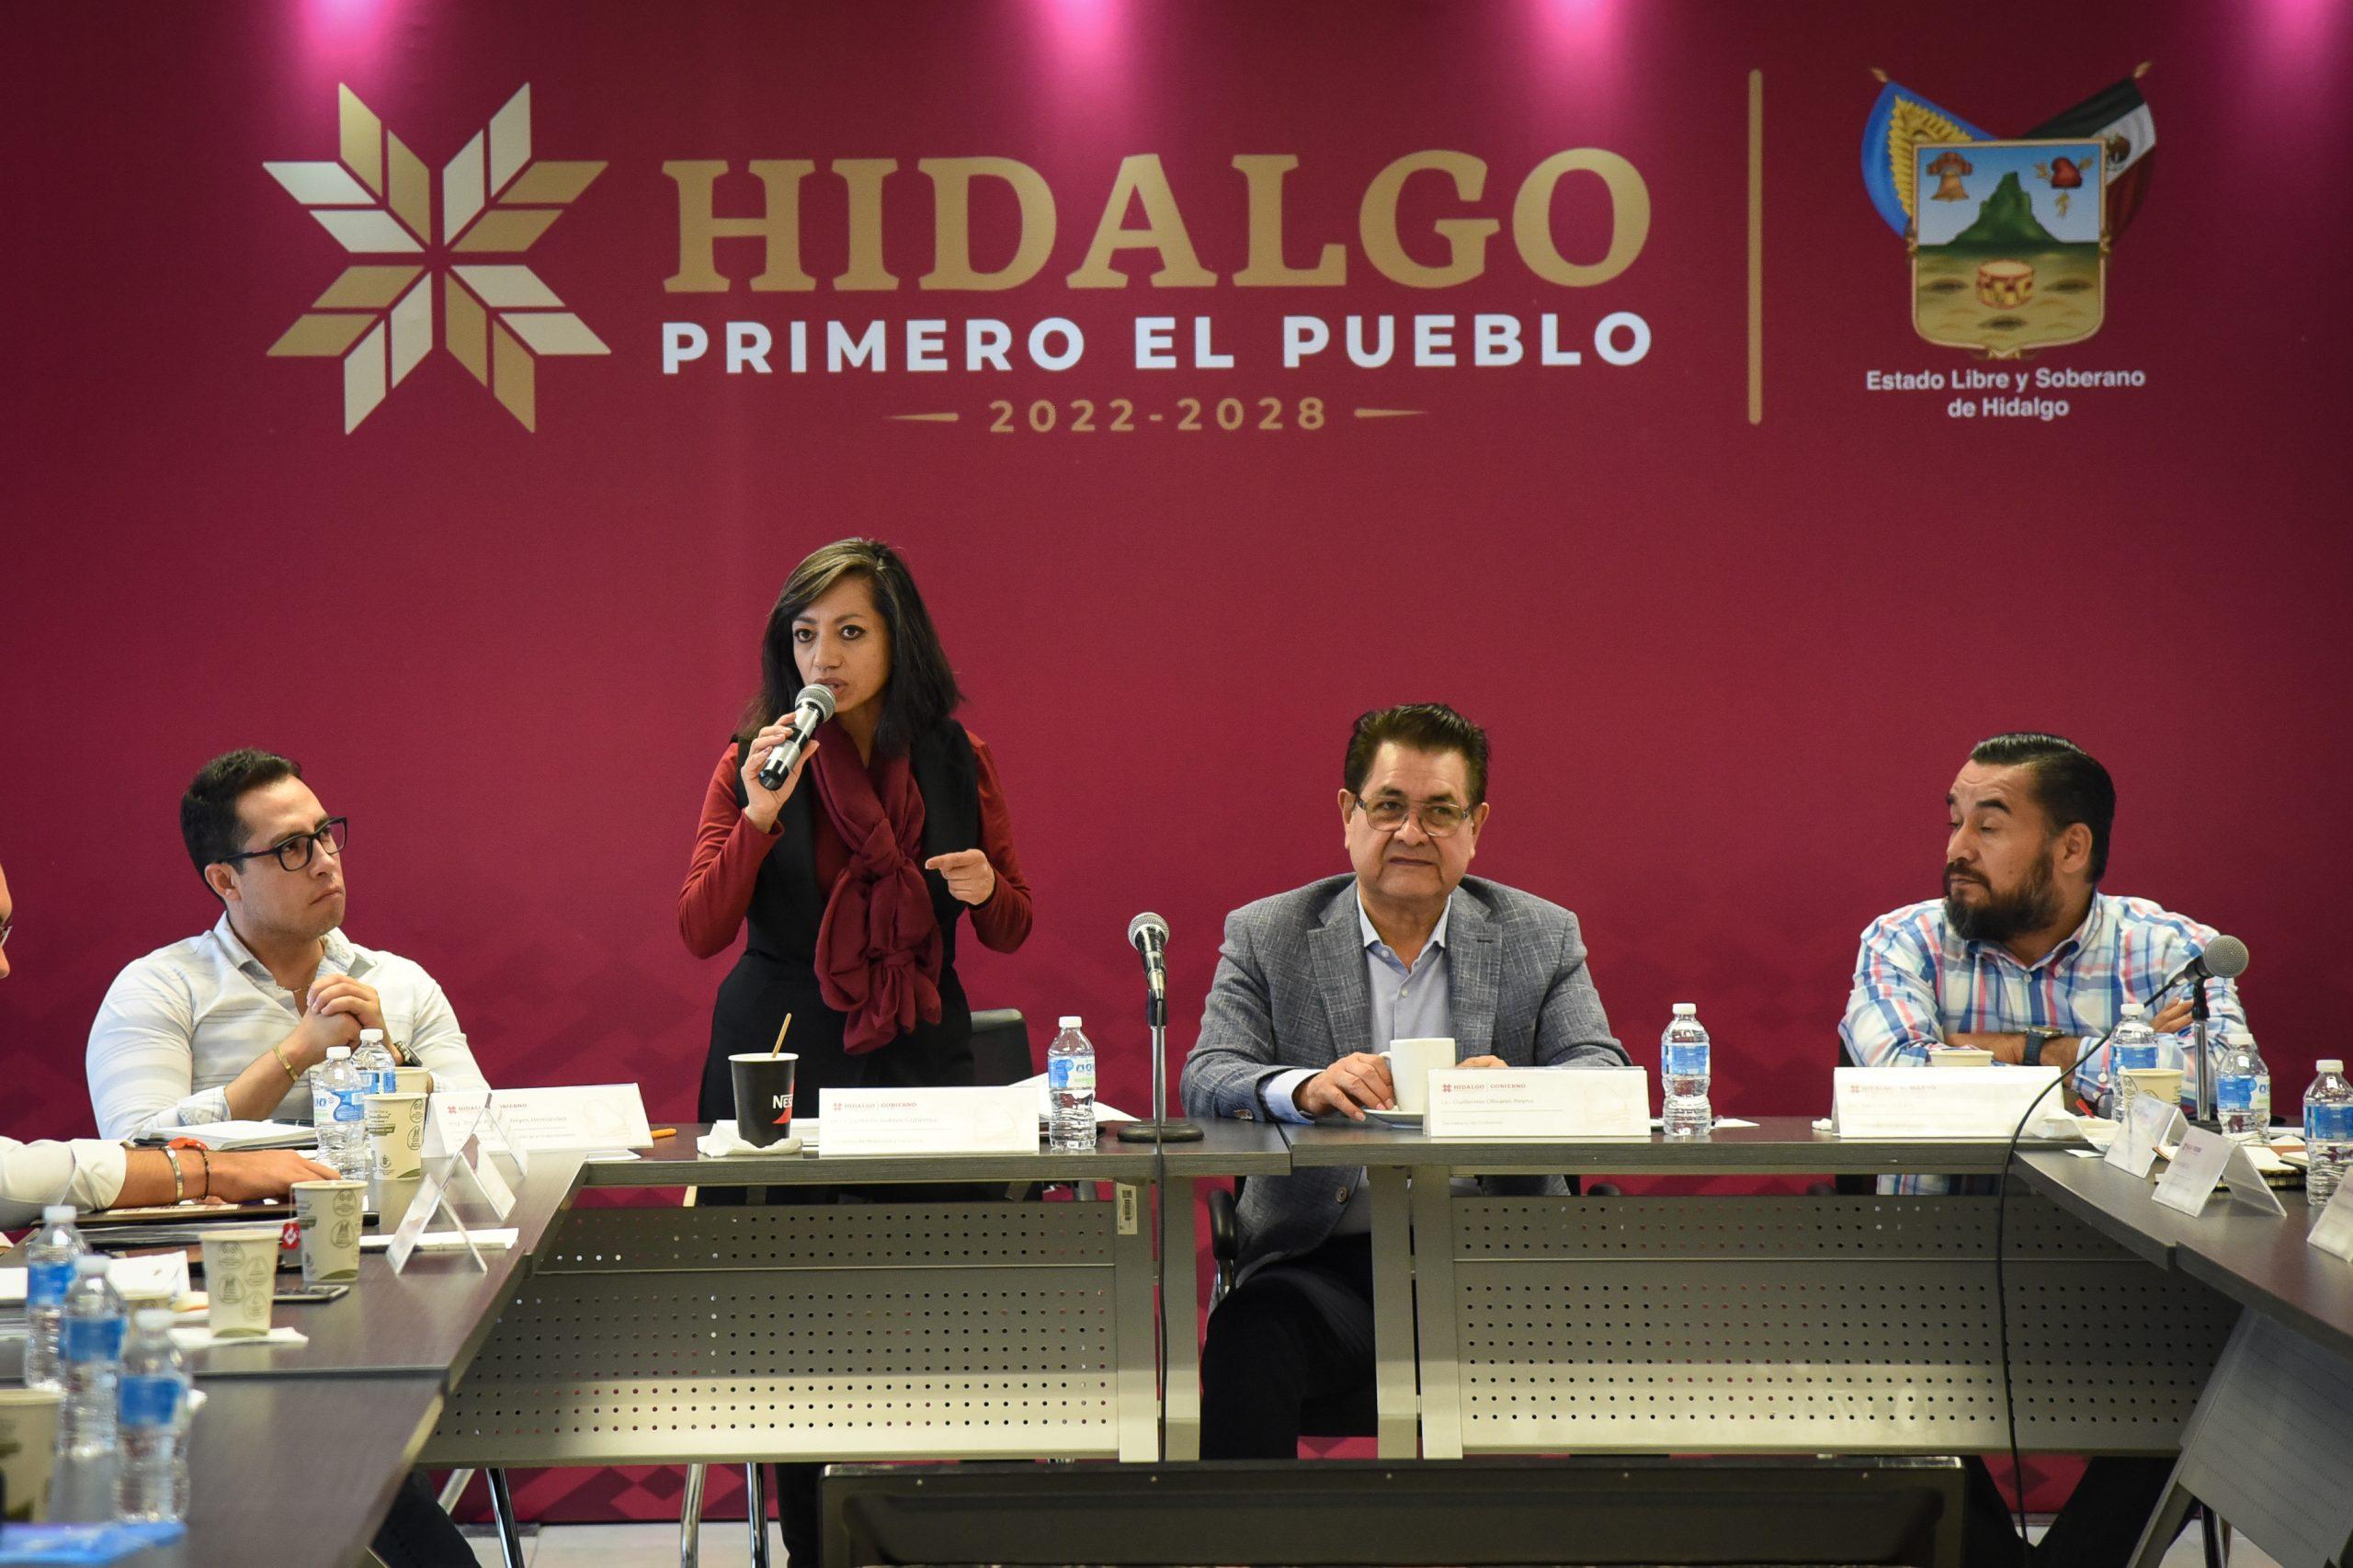 Hidalgo un gobierno cercano